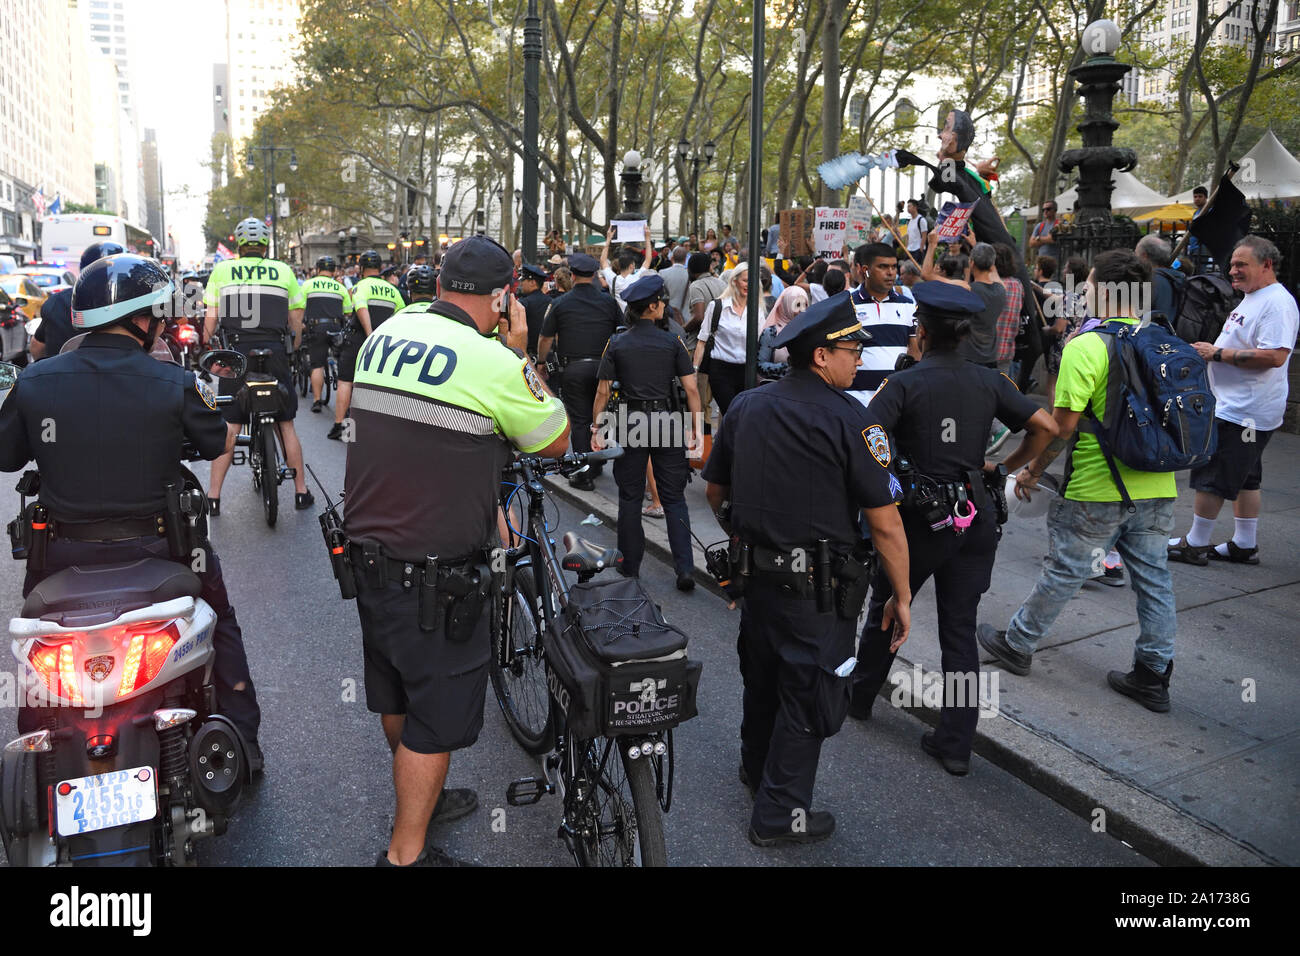 Observación NYPD el ascenso y resistir - unidos en la indignación, una marcha de la resistencia a lo largo de la Quinta Avenida. Foto de stock